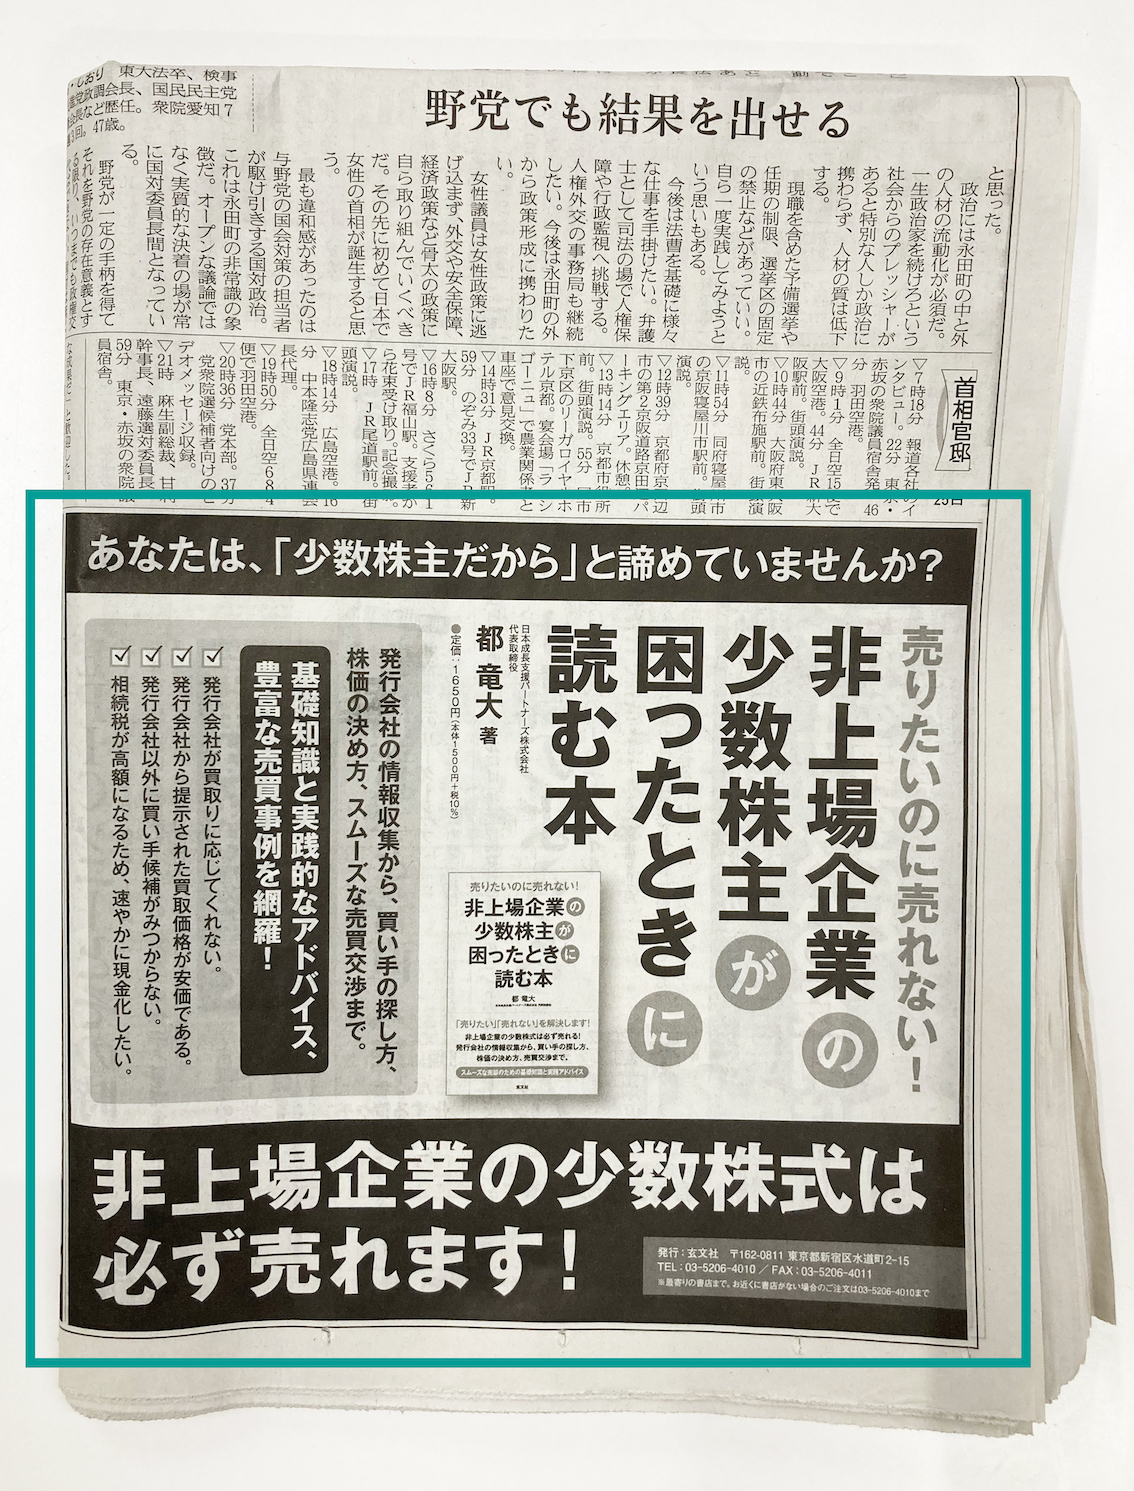 ブランディング出版のマーケティング方法は日経新聞